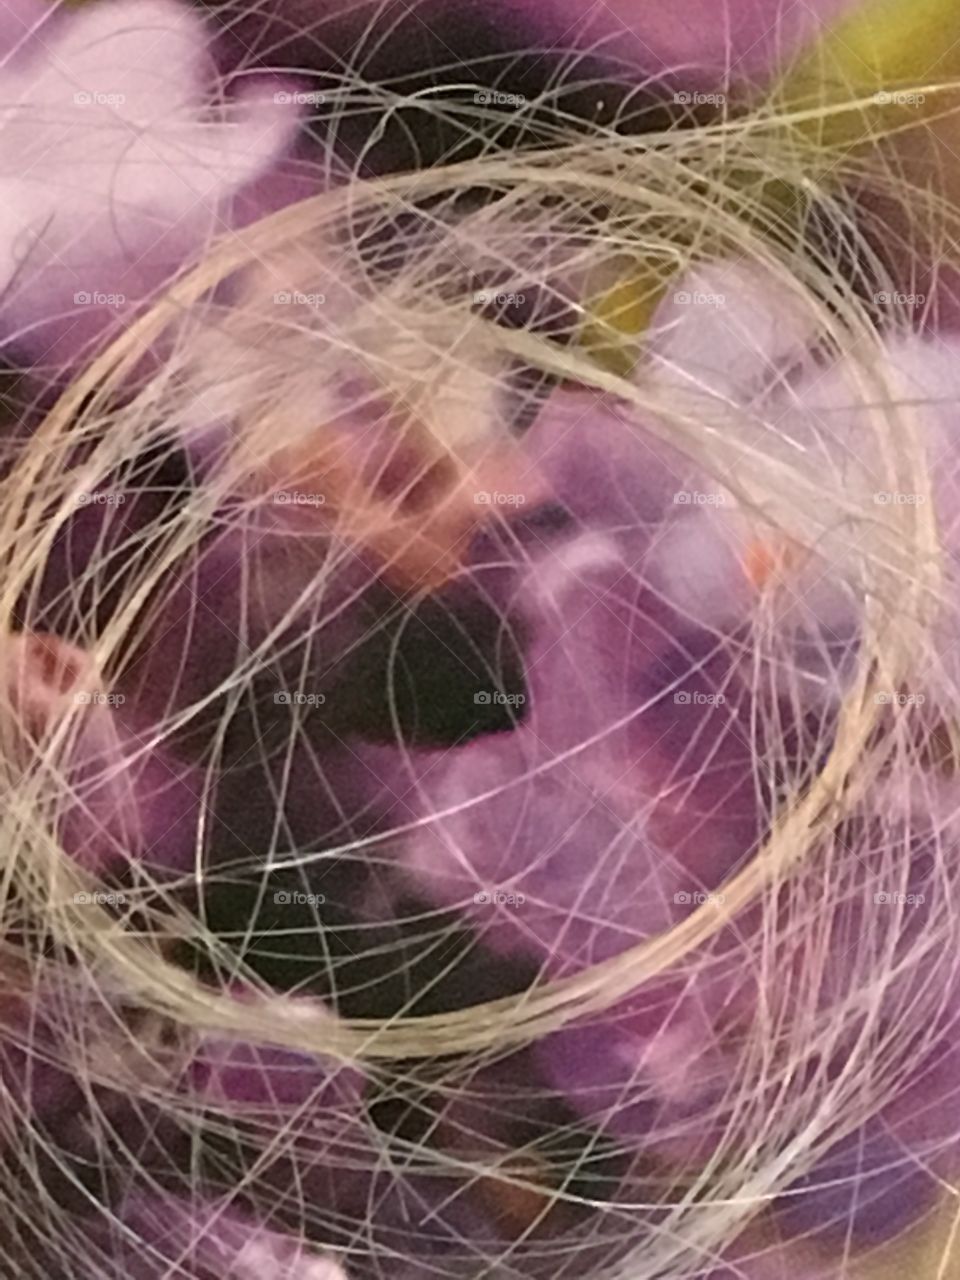 Circle of hair